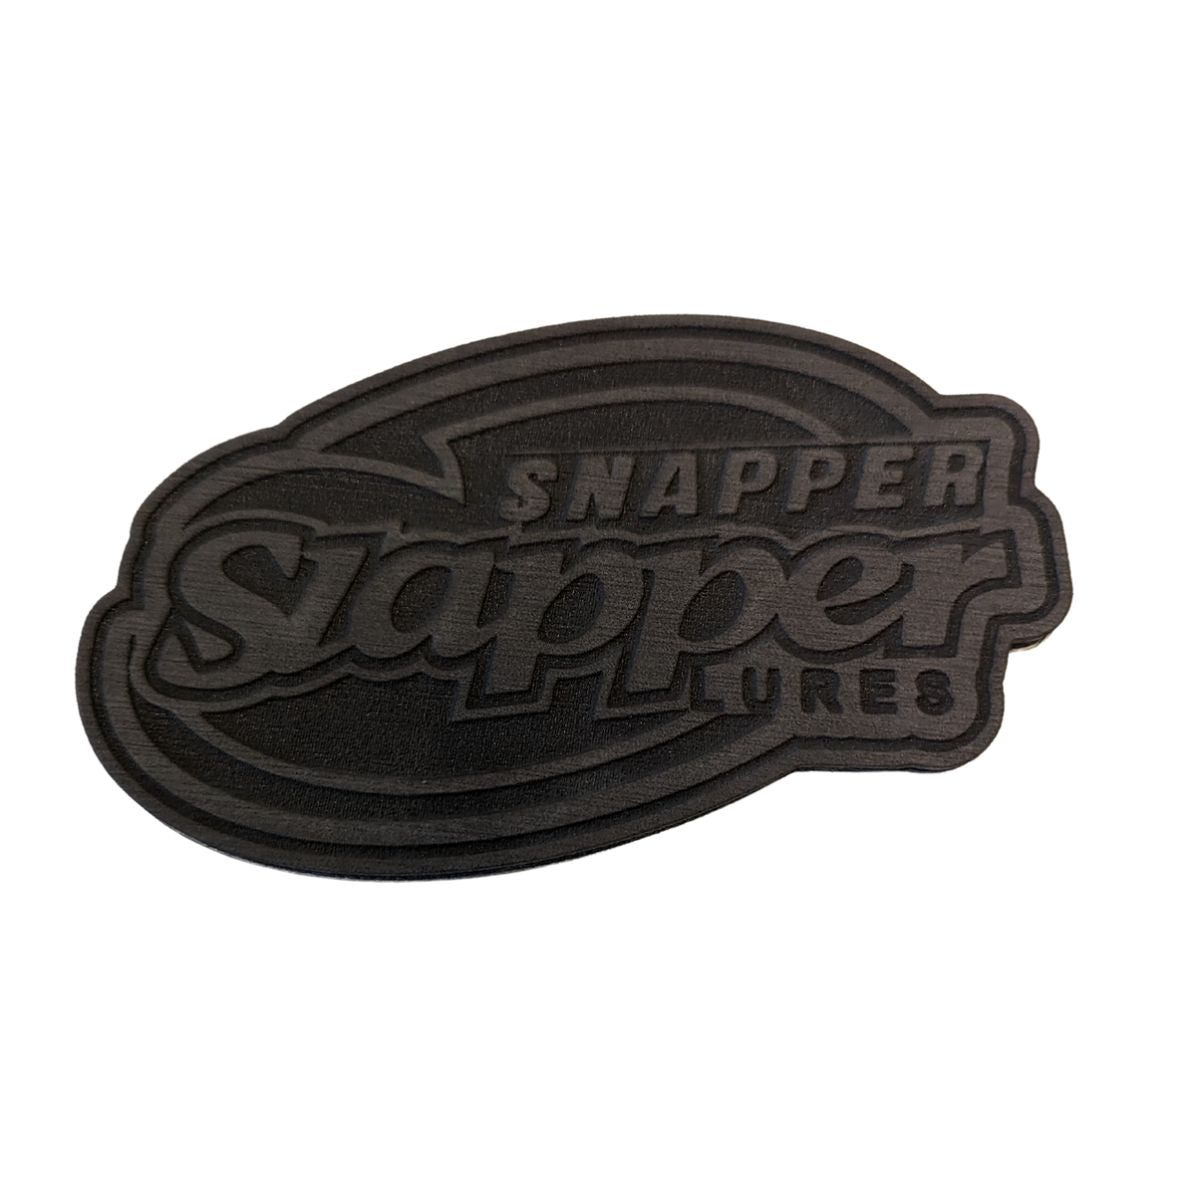 Snapper Slapper Logo Hook Pad